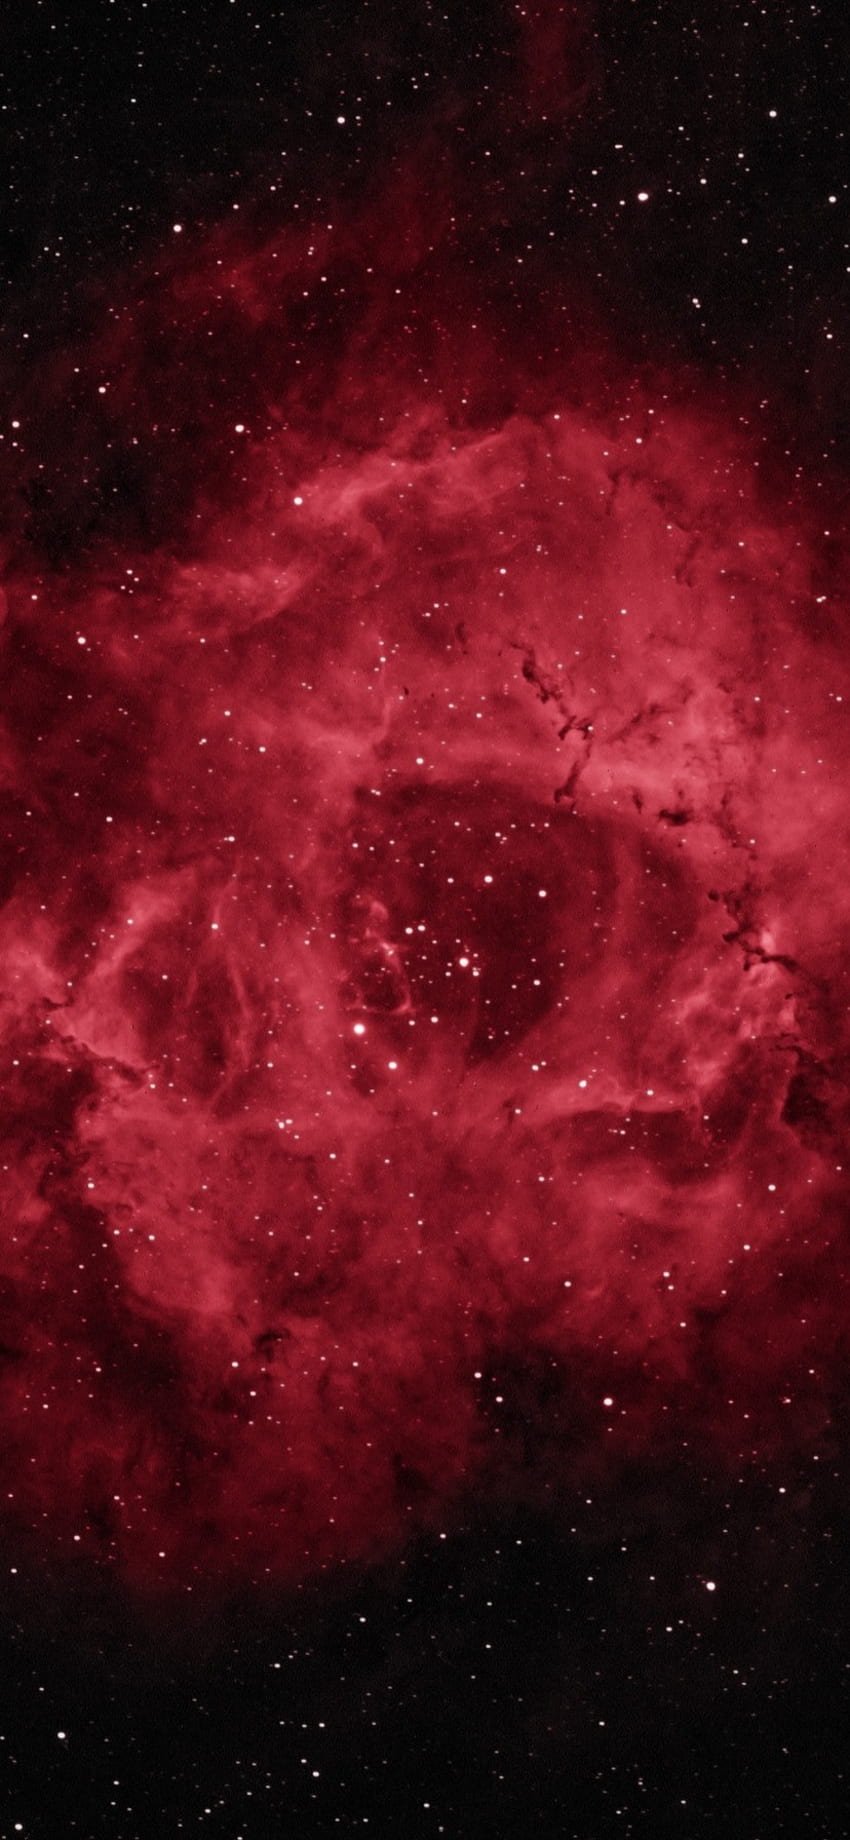 Vũ trụ vô tận luôn chứa đựng những điều kỳ diệu. Rosette Nebula - một bức tranh thần tiên nằm trong vũ trụ sẽ khiến bạn phải trầm trồ khi đón xem. Hãy khám phá thế giới bí ẩn của vũ trụ qua hình ảnh liên quan đến từ khóa \